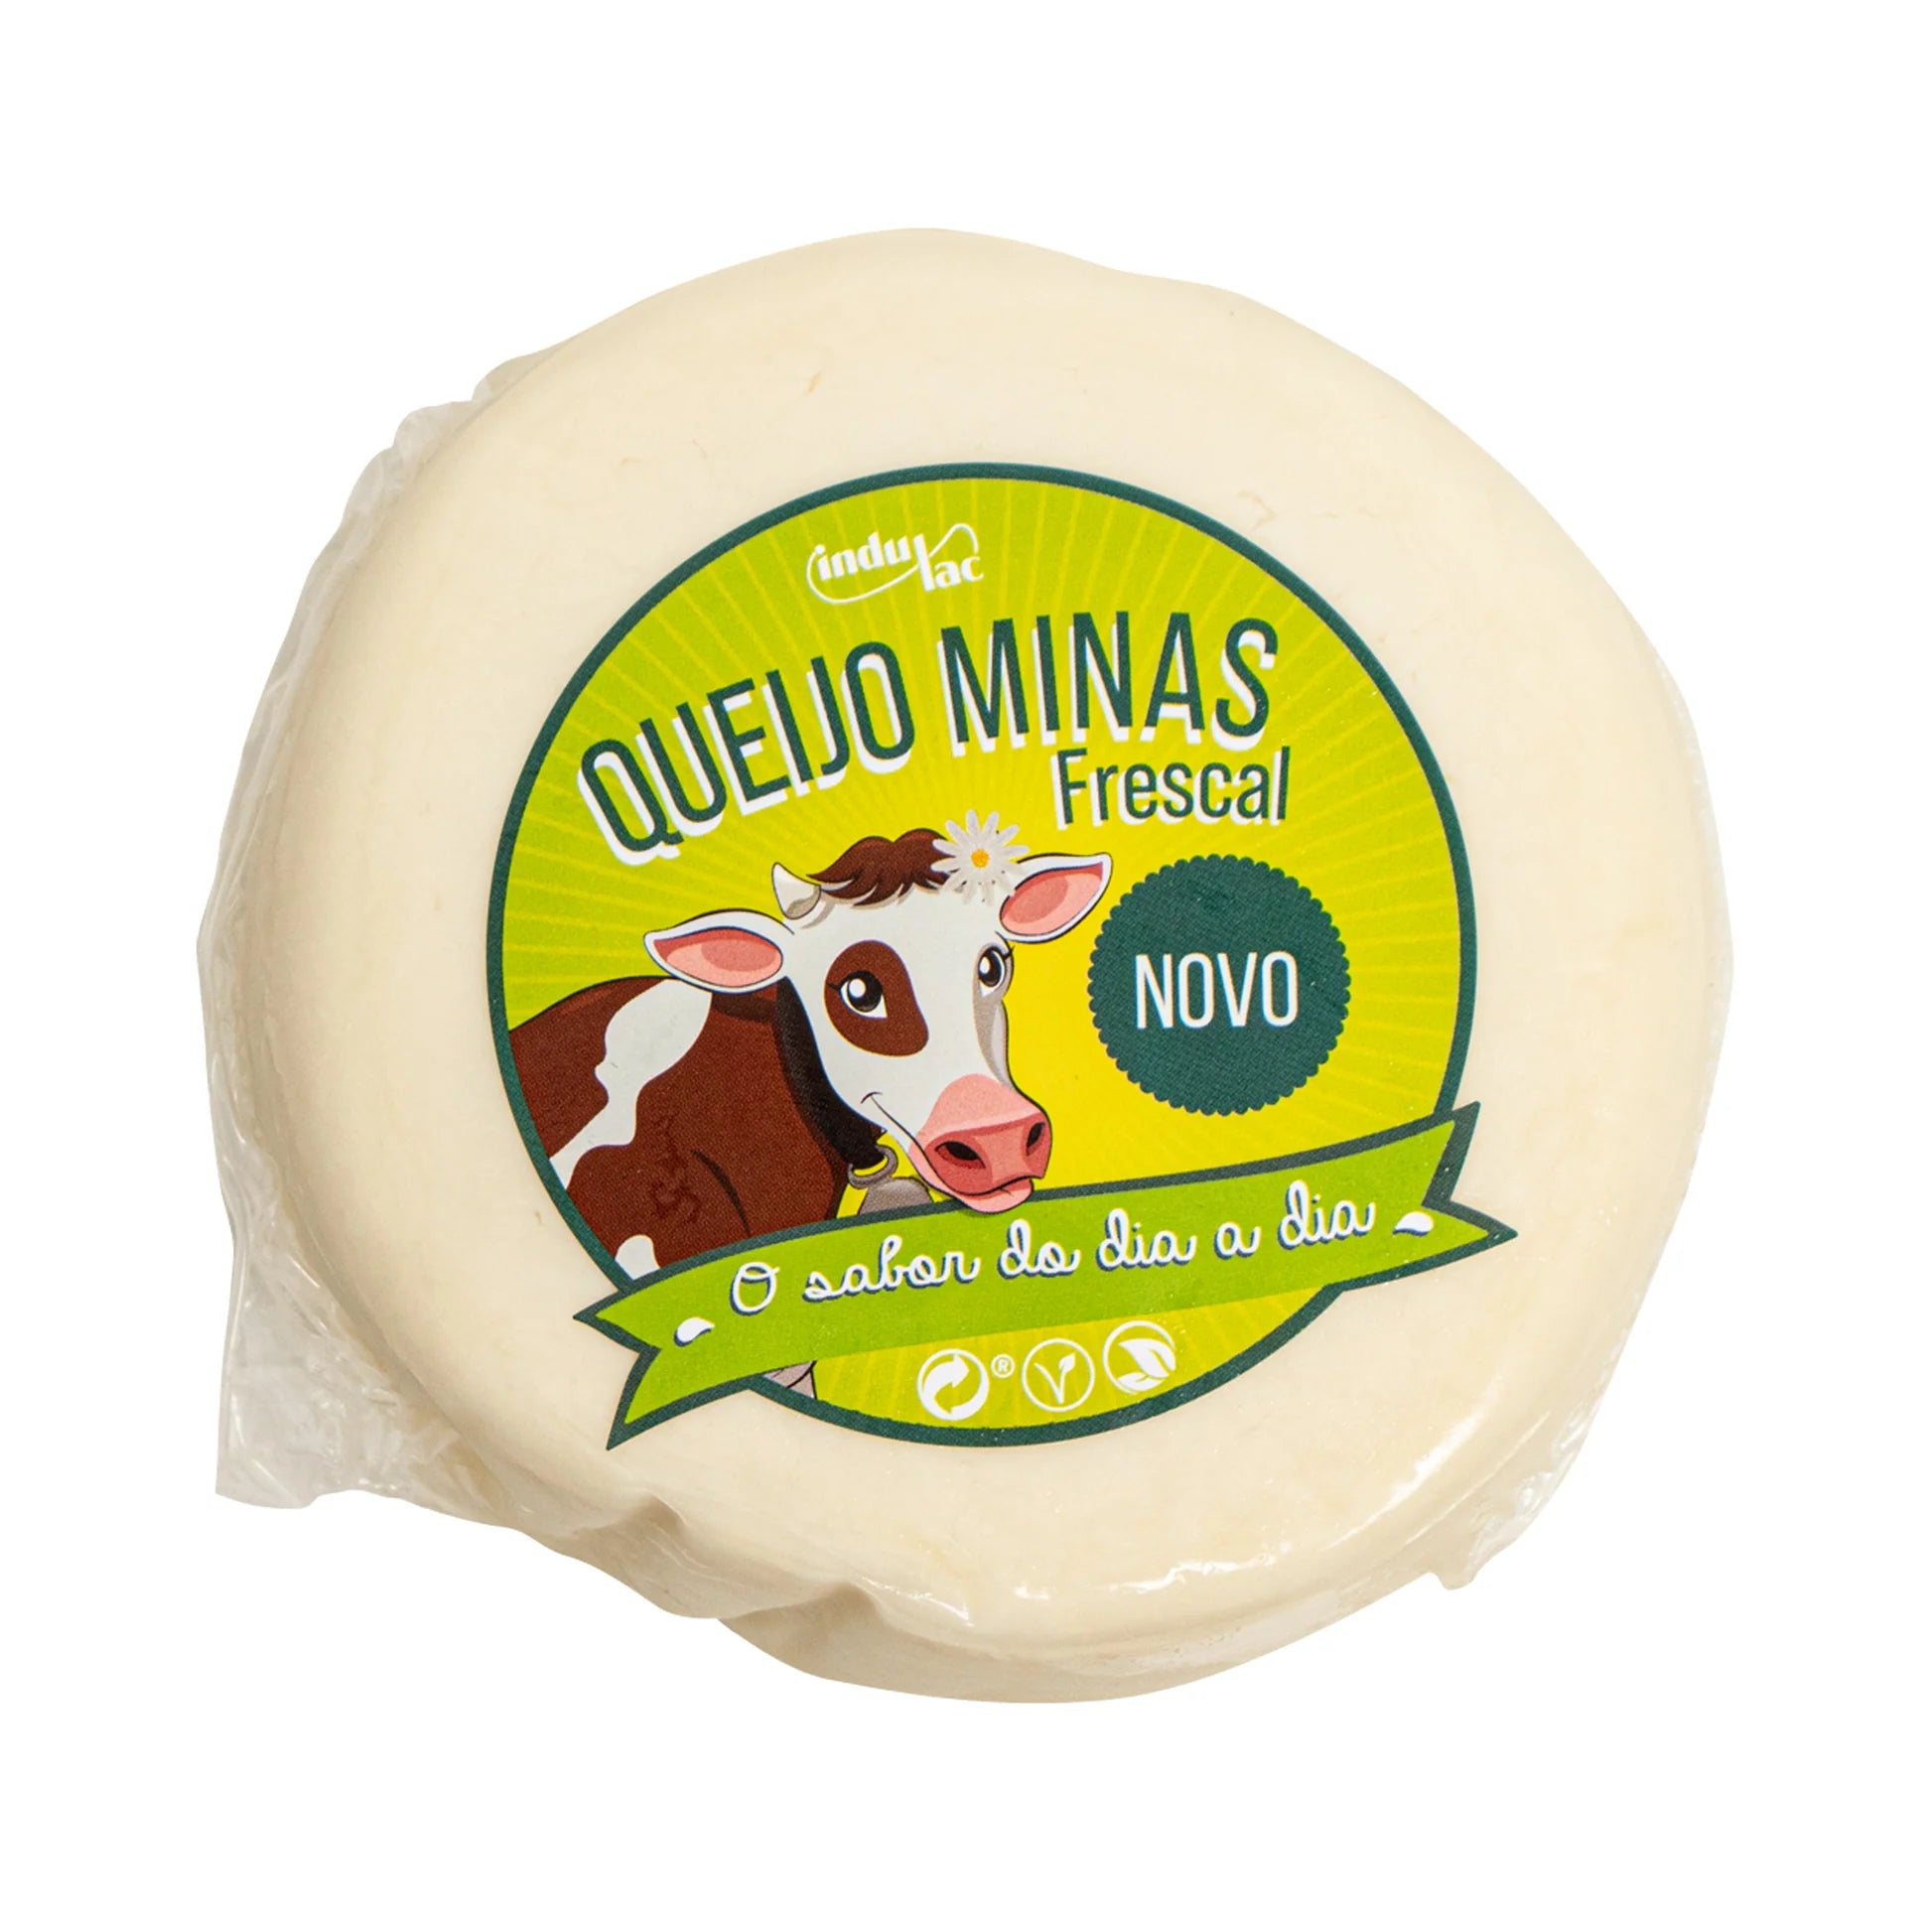 Queijo Minas Frescal (Aprox 450g) - Minas Frescal Cheese (Approx 450g)